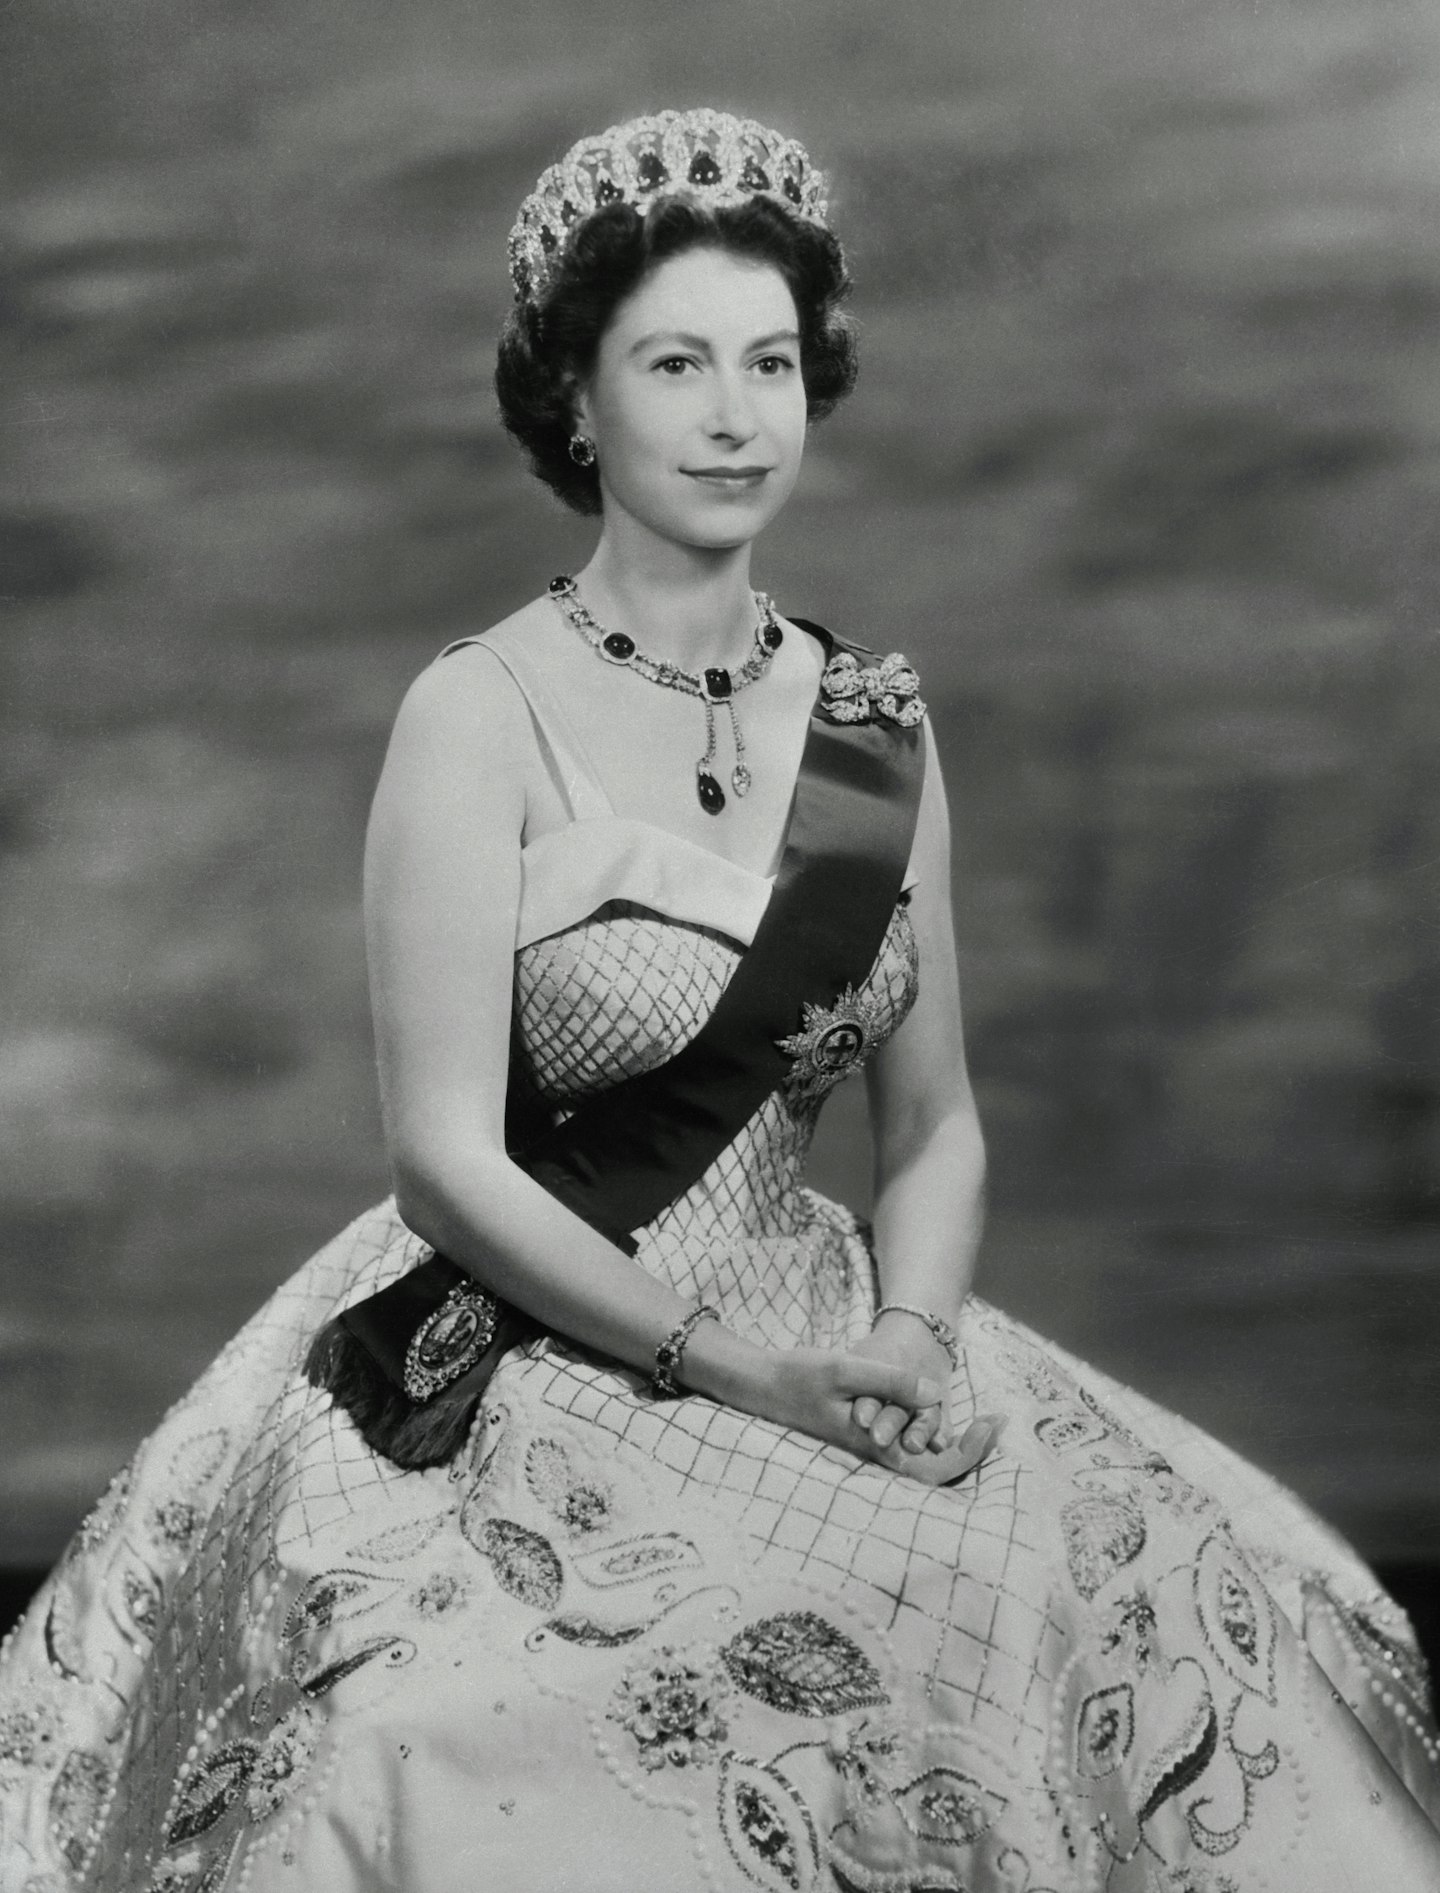 Queen Elizabeth II in the 1950s